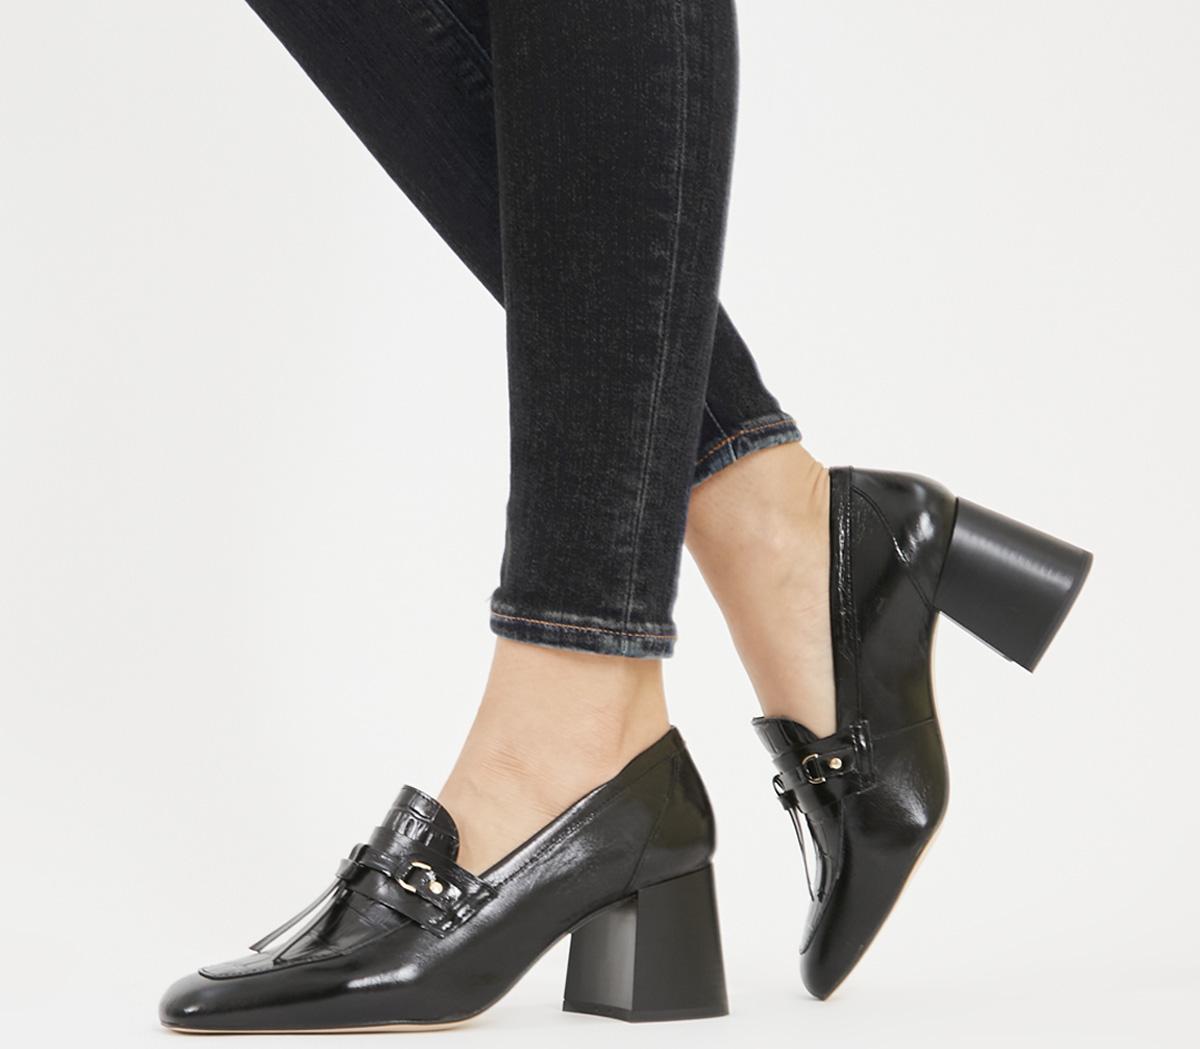 cute black block heels